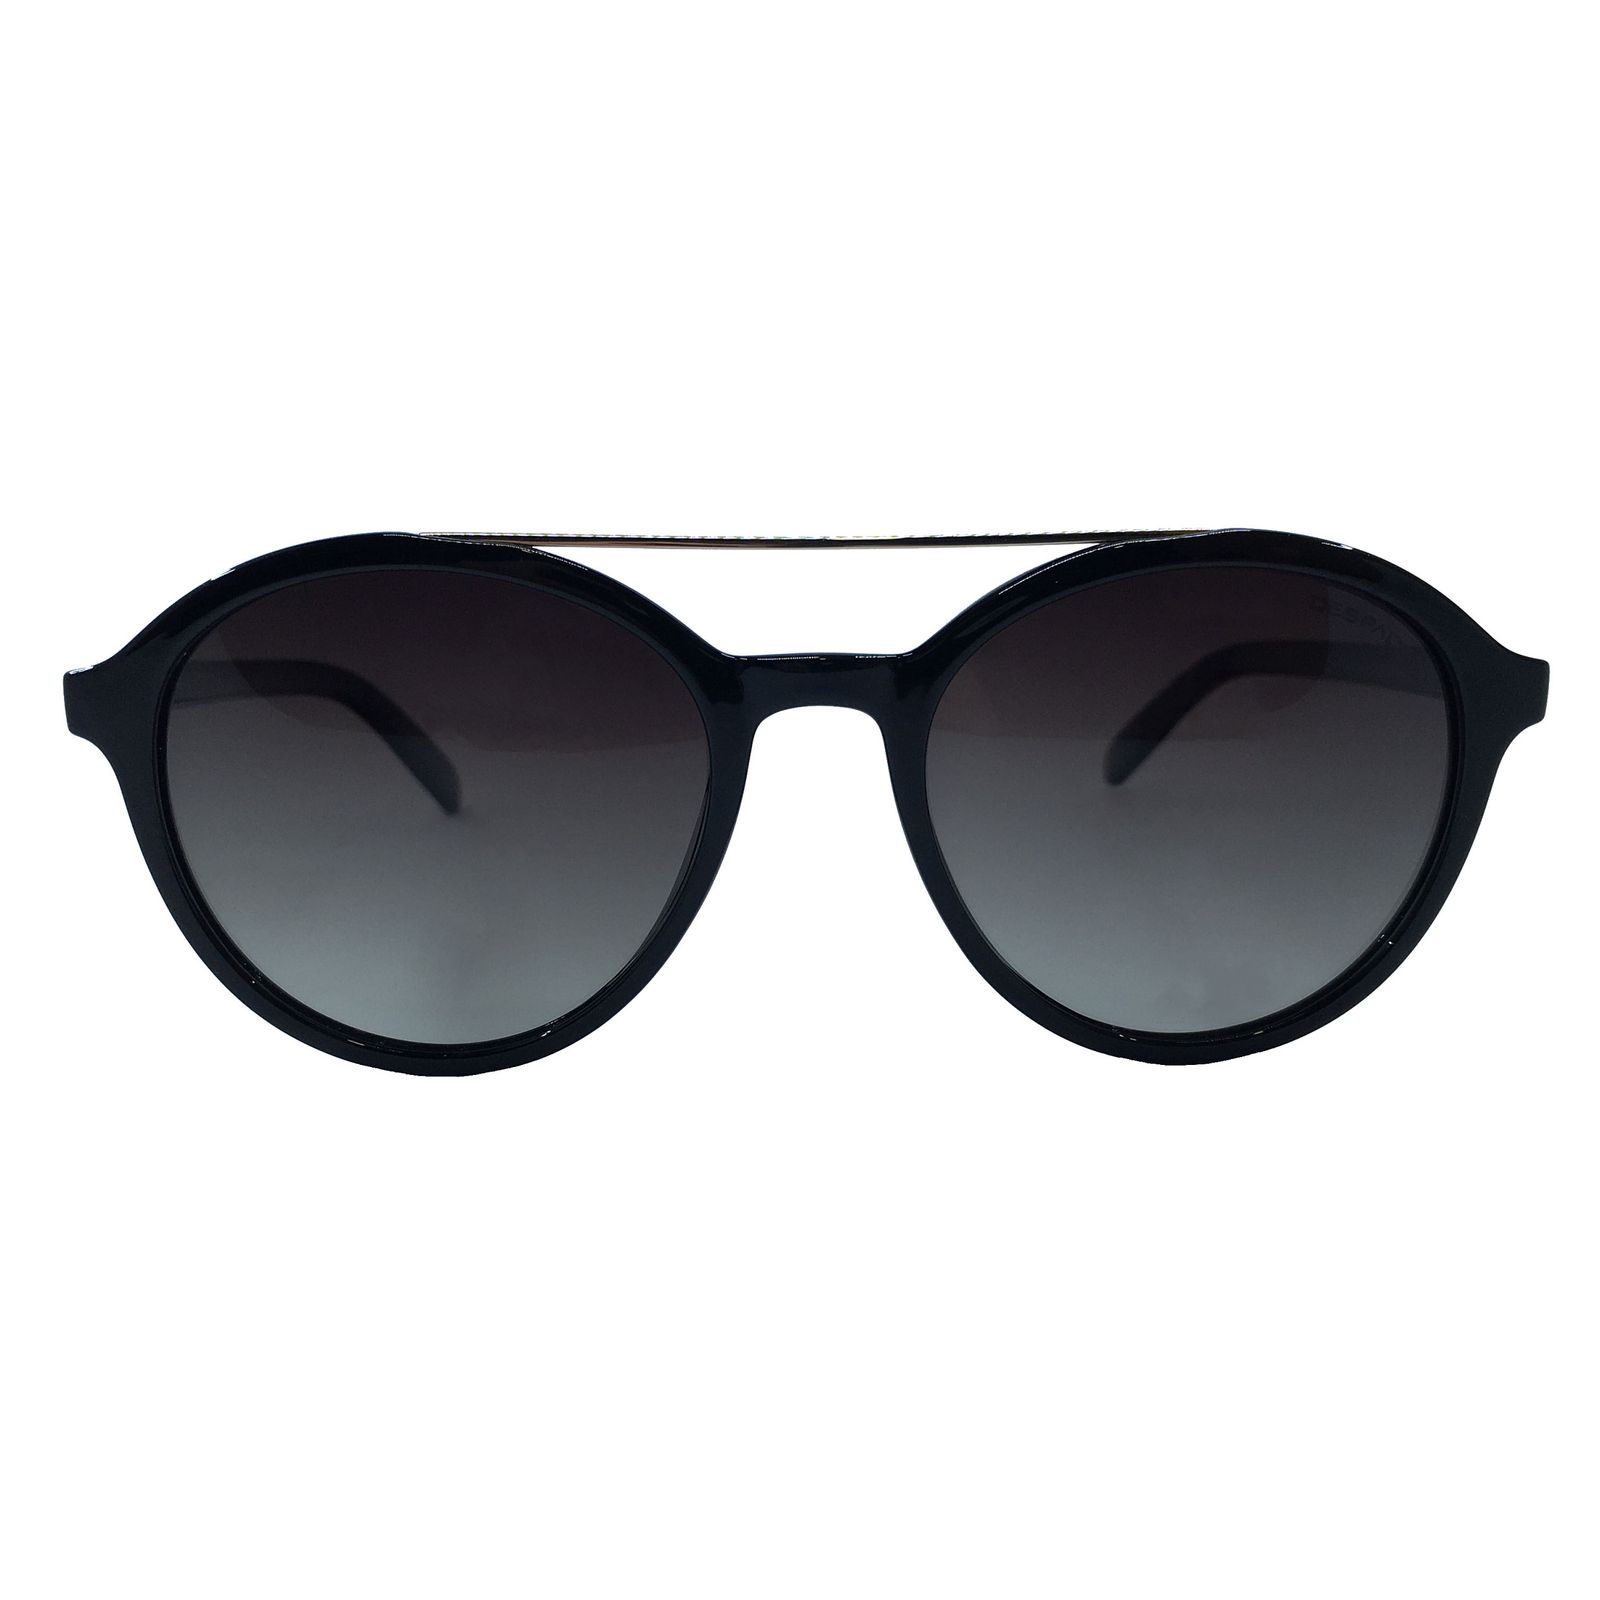 عینک آفتابی مردانه دسپادا مدل DS1569 C1 -  - 1